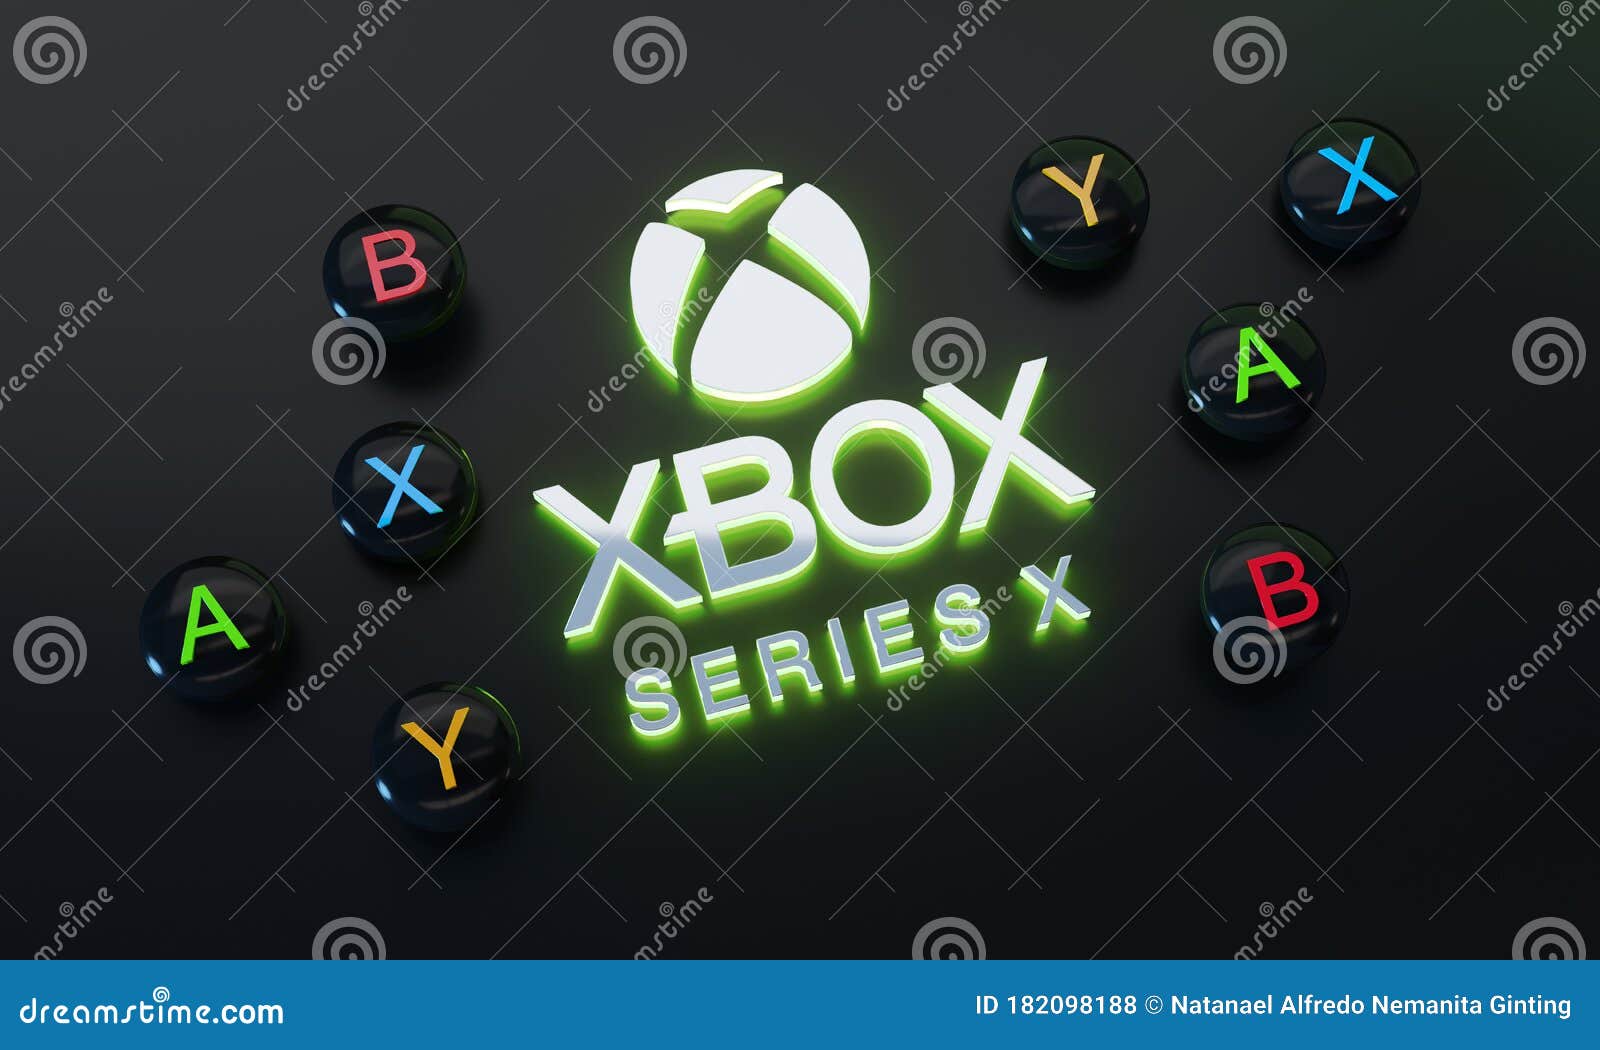 Logo Game Series Xbox Series X chính là thứ bạn cần để hiện thực hóa đam mê game của mình trên chiếc console đỉnh cao đến từ Microsoft. Logo này không chỉ đơn thuần là biểu tượng của thương hiệu mà còn là một lời cam kết về chất lượng và độ sáng tạo. Hãy xem qua hình ảnh liên quan để cảm nhận sự thật này.